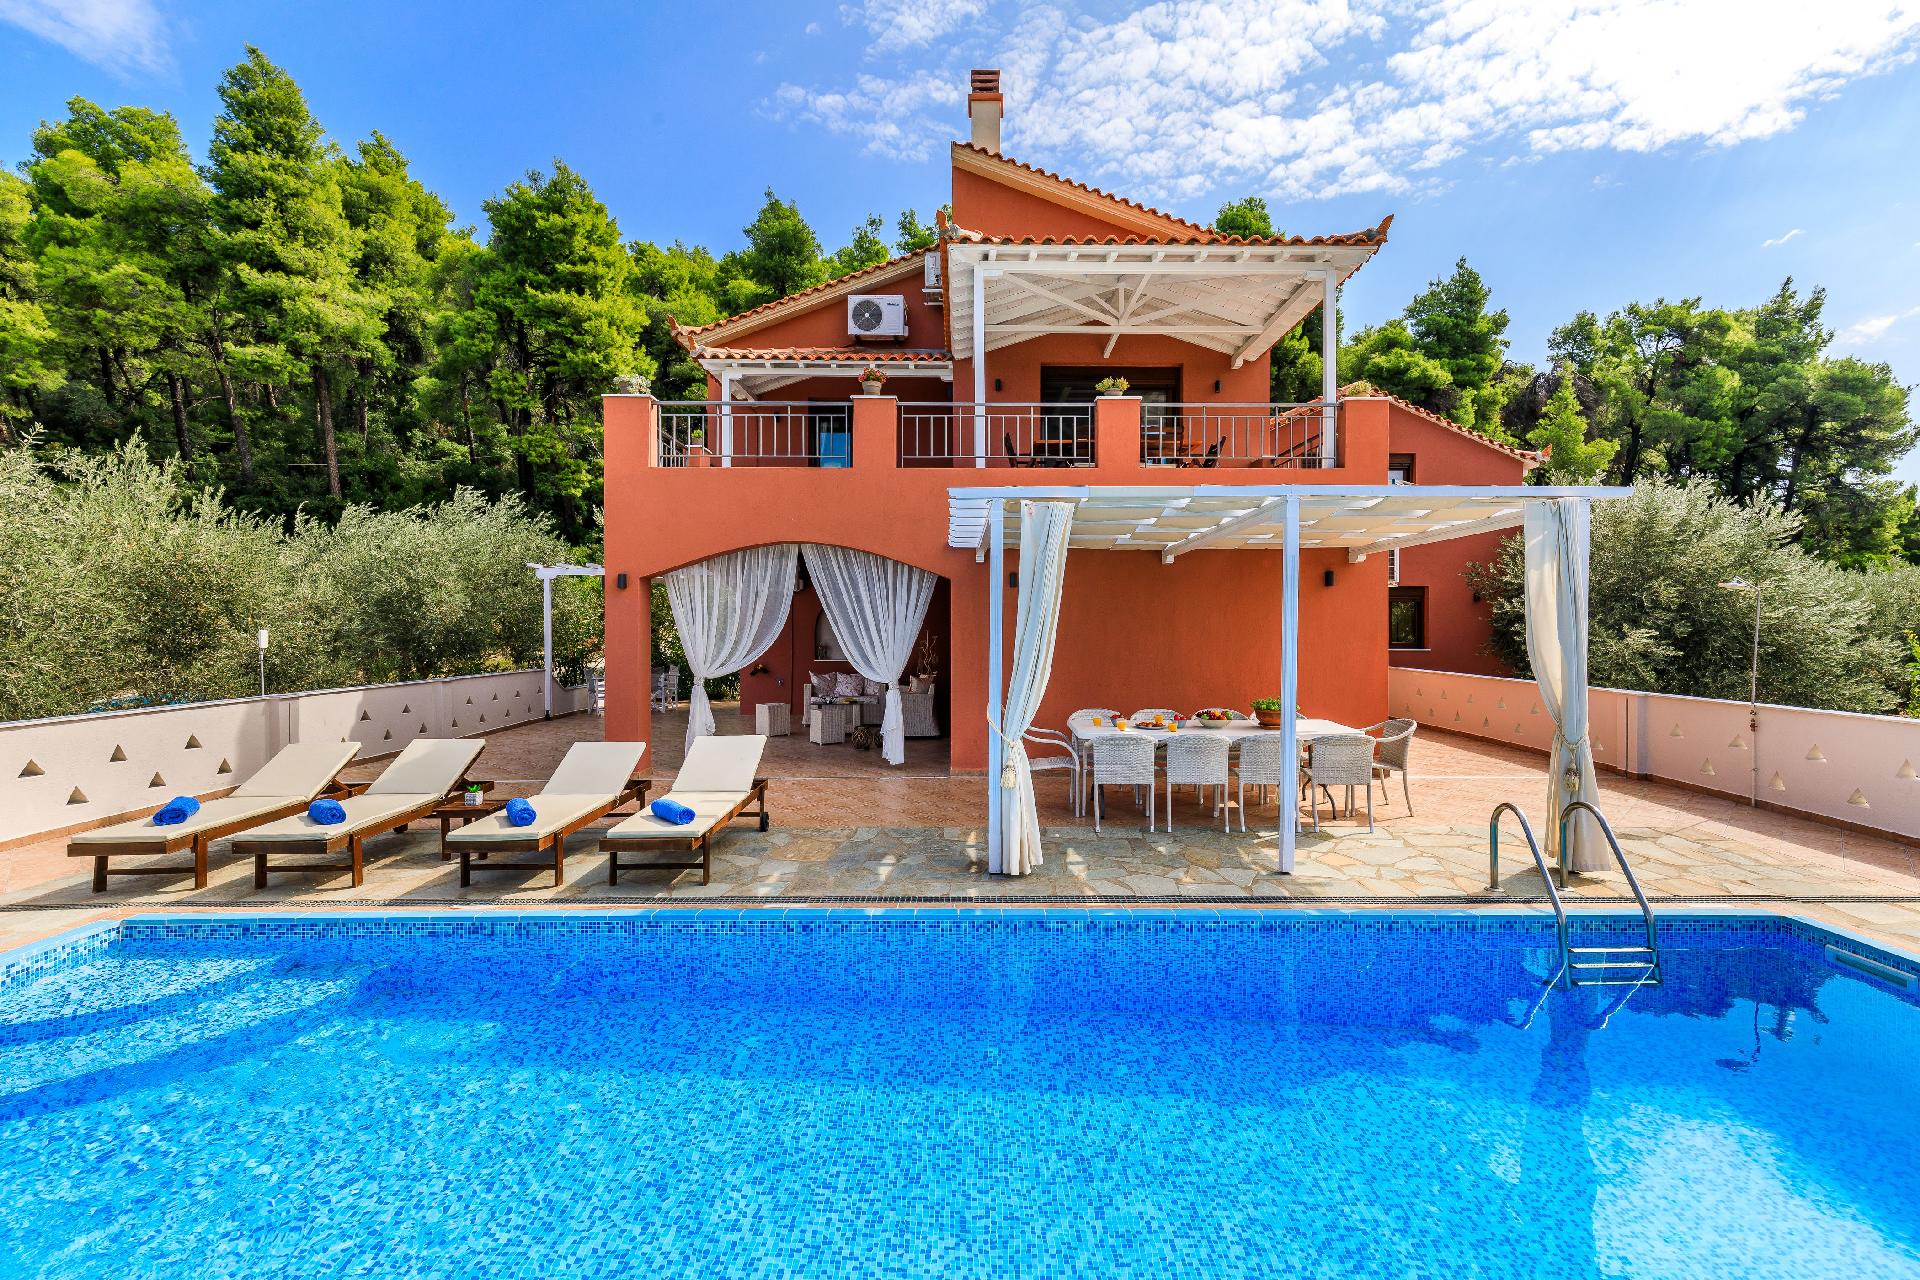 Ferienhaus mit Privatpool für 10 Personen  +  Ferienhaus in Griechenland